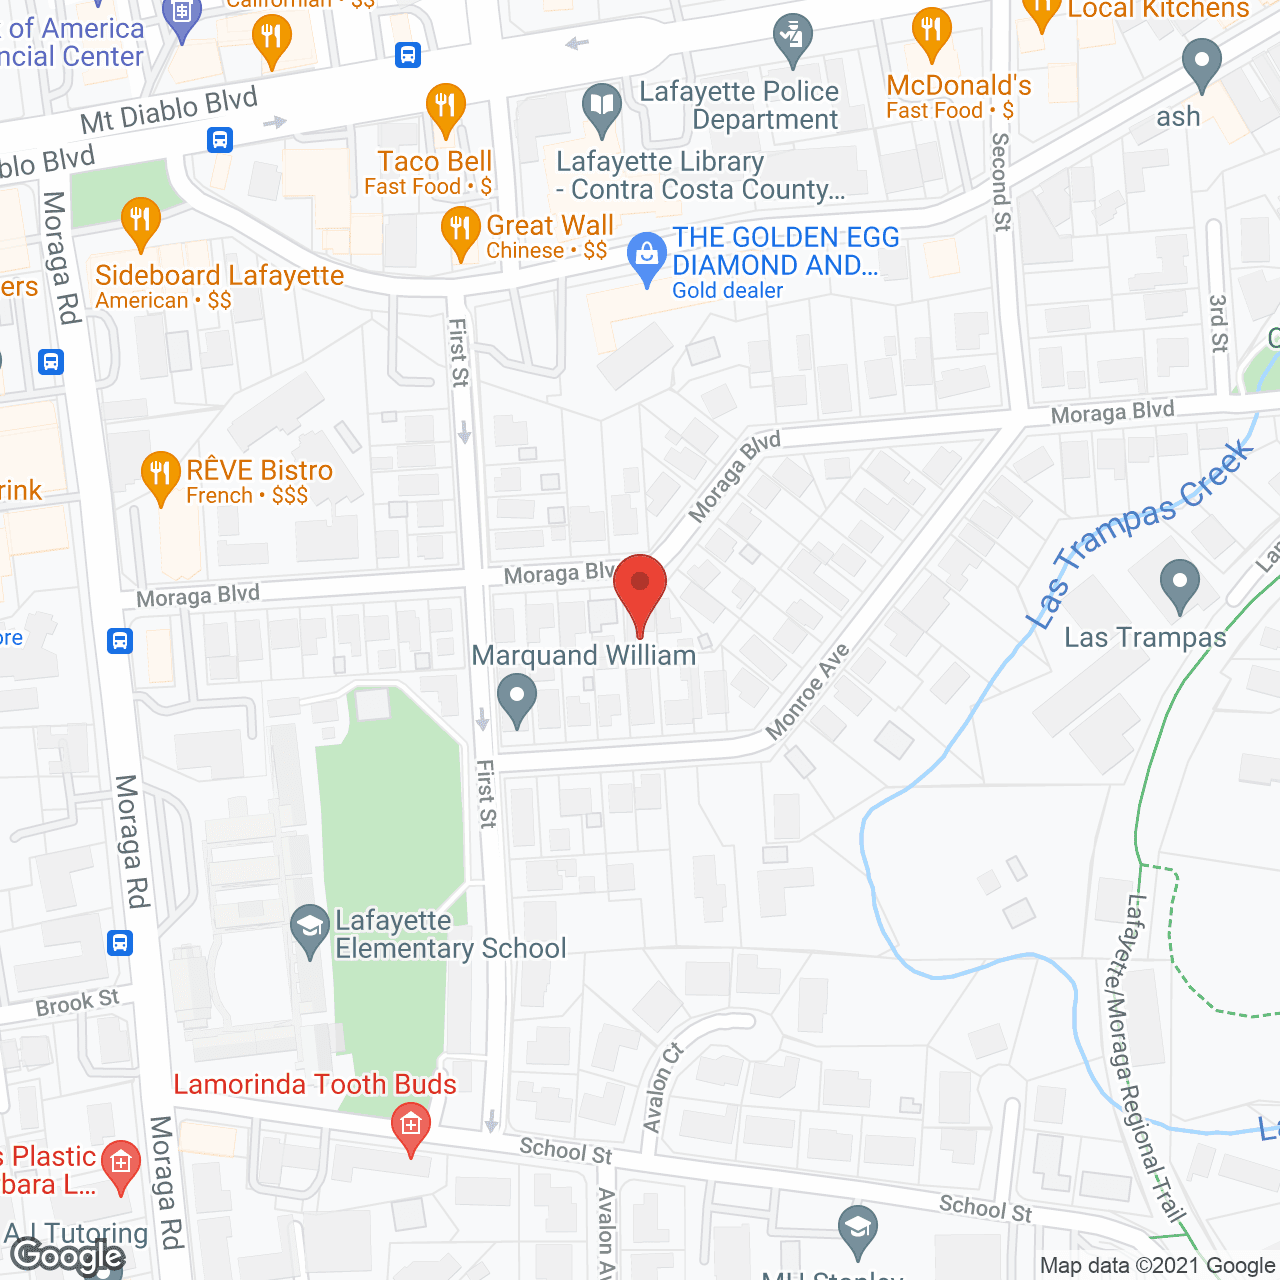 Lafayette Gardens in google map